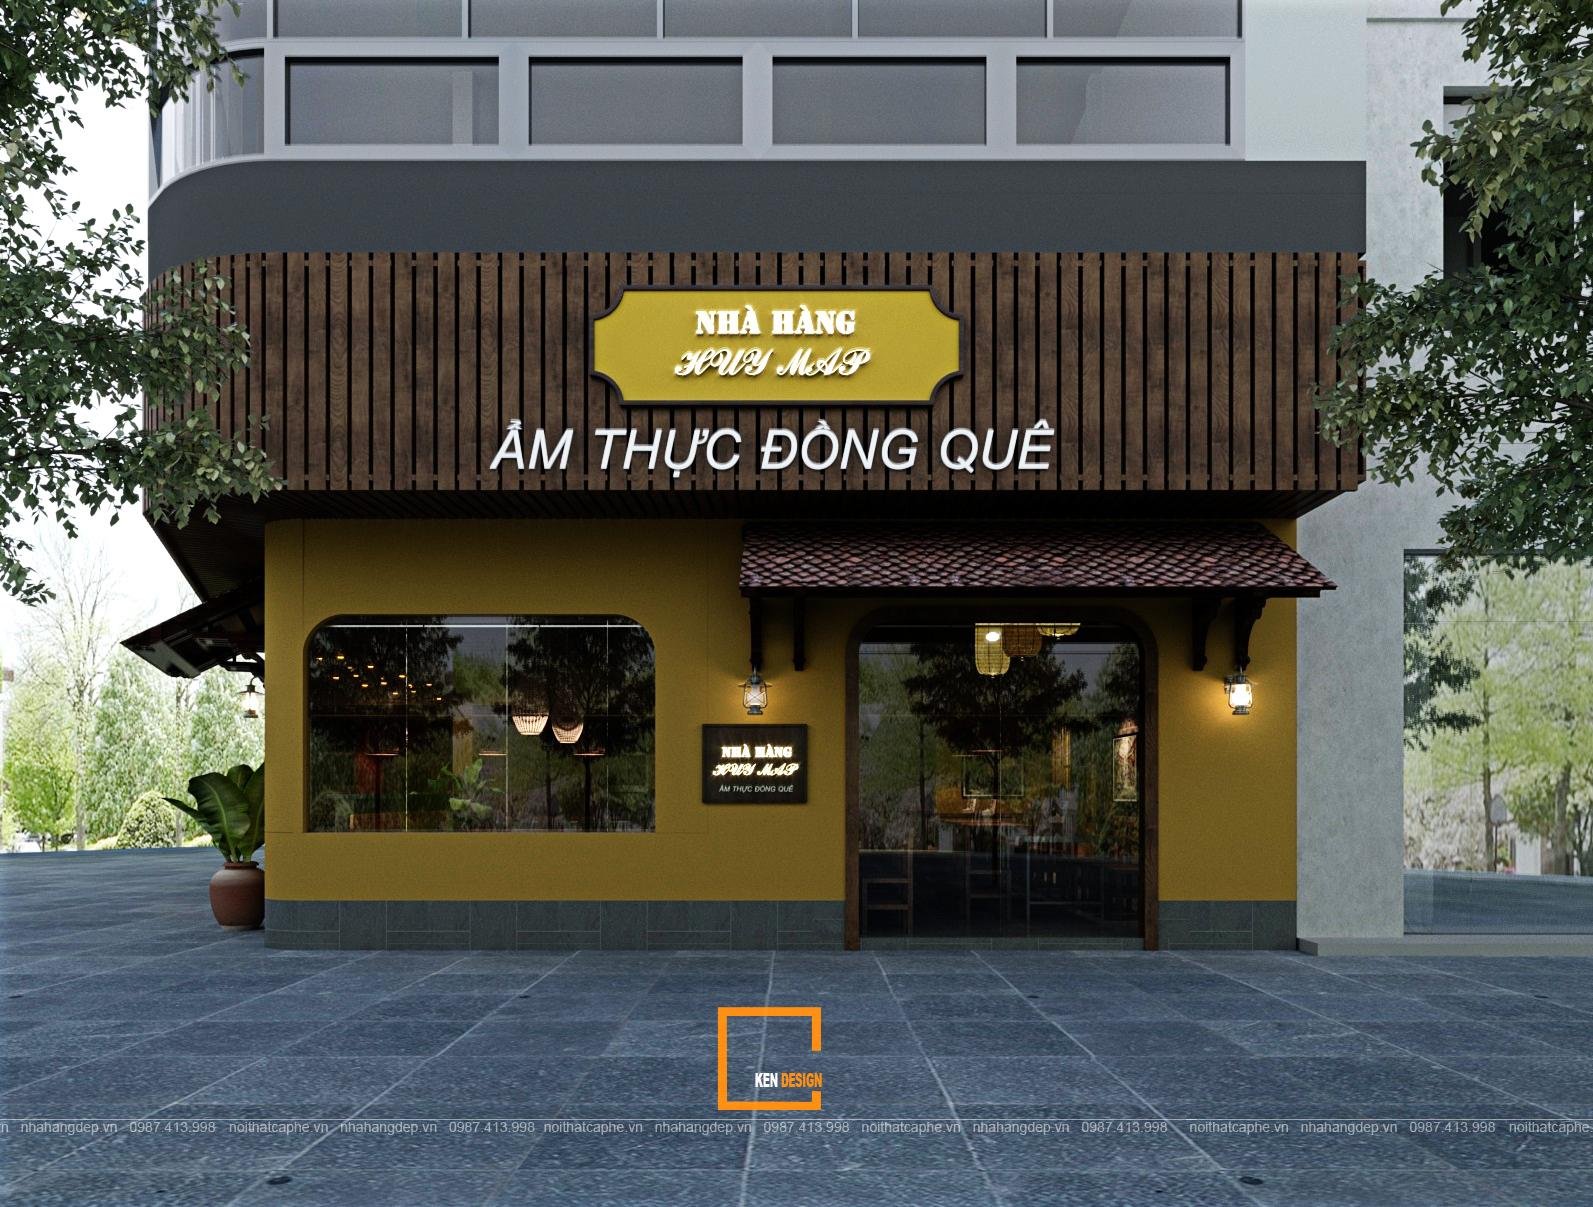 Thiết kế nhà hàng ẩm thực đồng quê Huy Mập | Kendesign